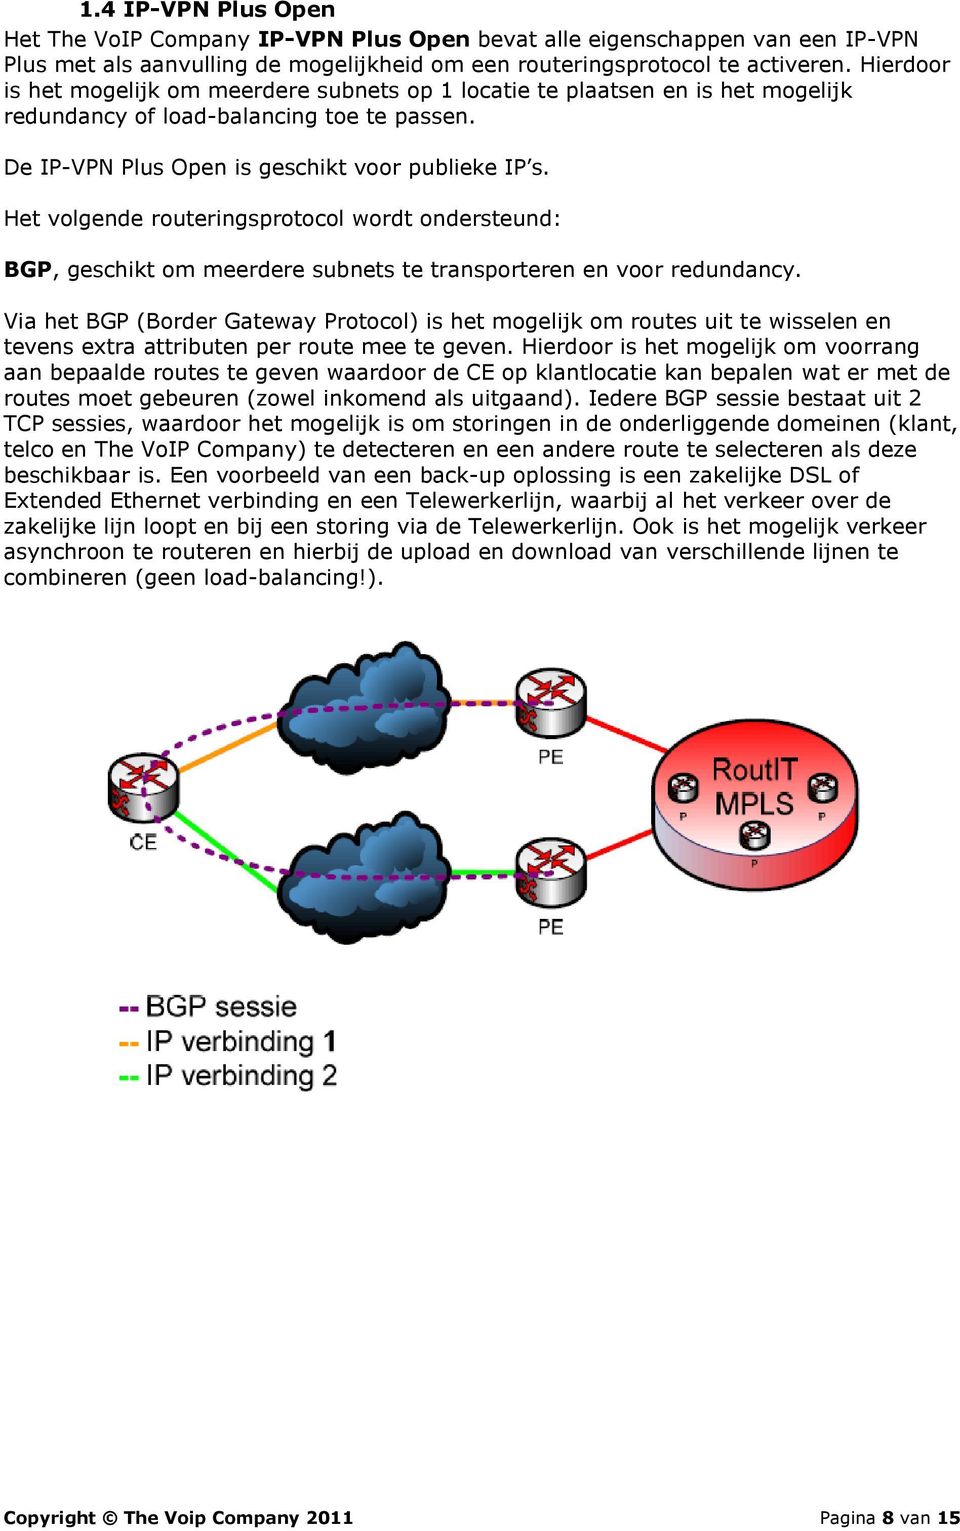 Het volgende routeringsprotocol wordt ondersteund: BGP, geschikt om meerdere subnets te transporteren en voor redundancy.